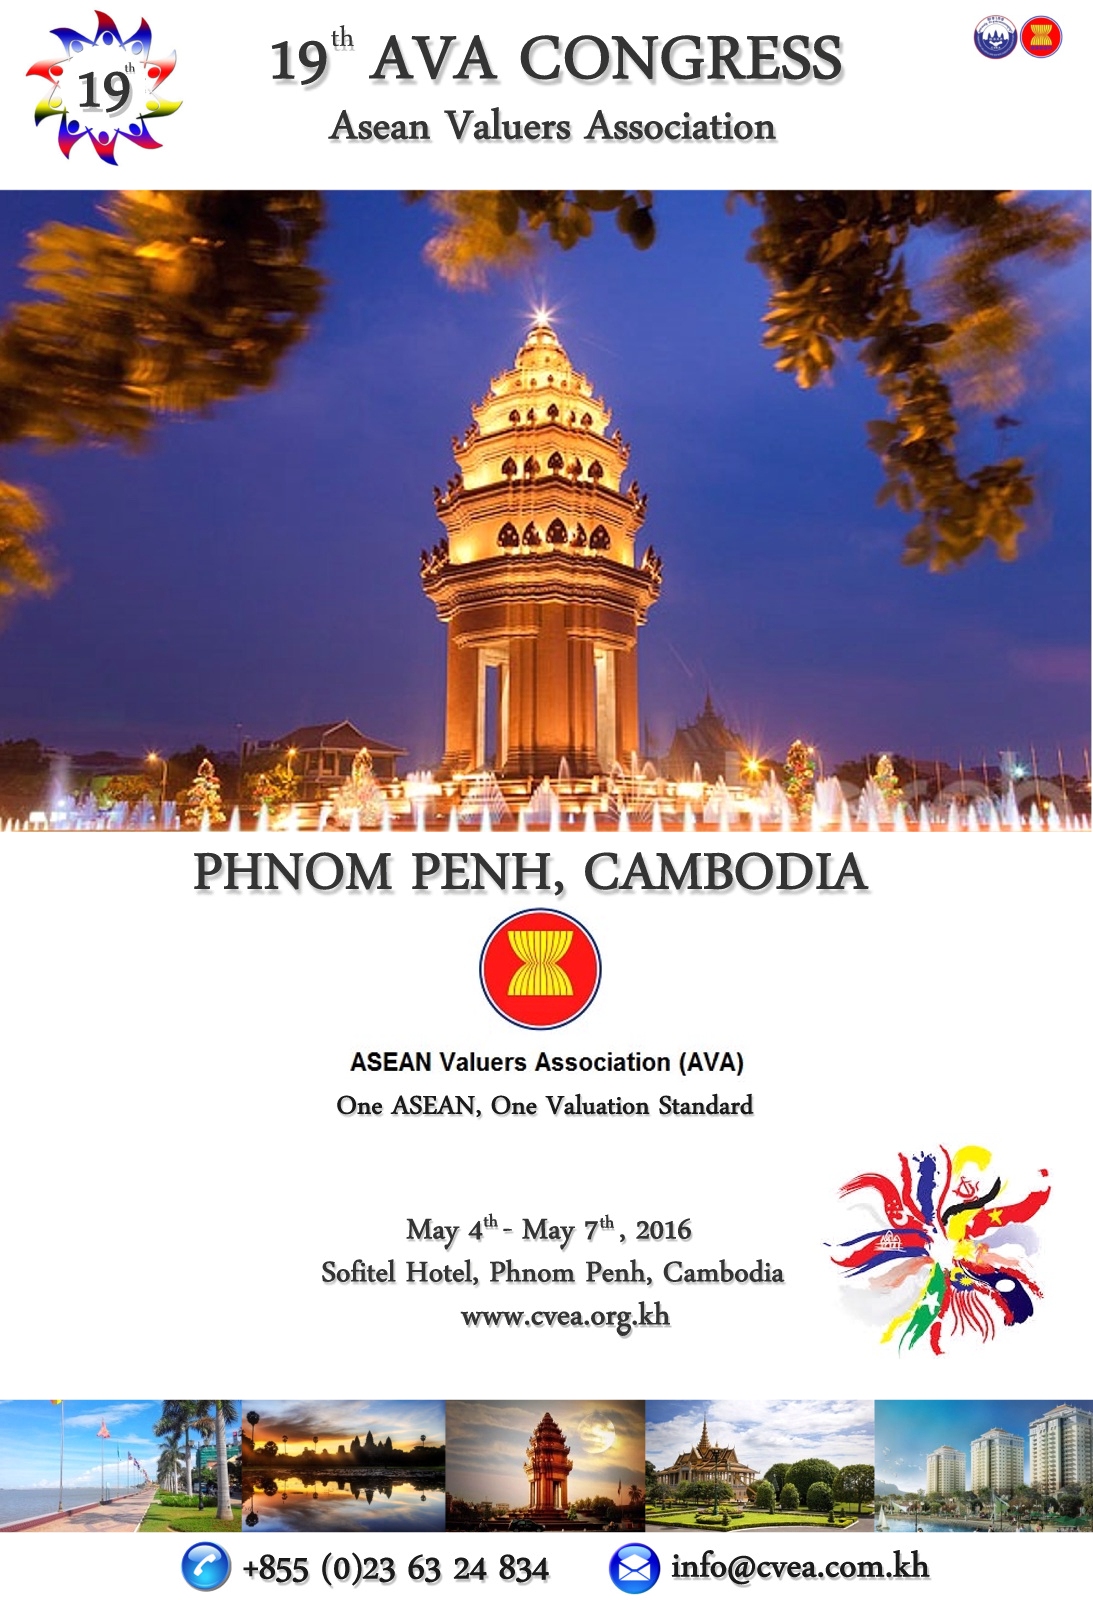 ASEAN Valuers Association (AVA) Congress 2016, Phnom Penh